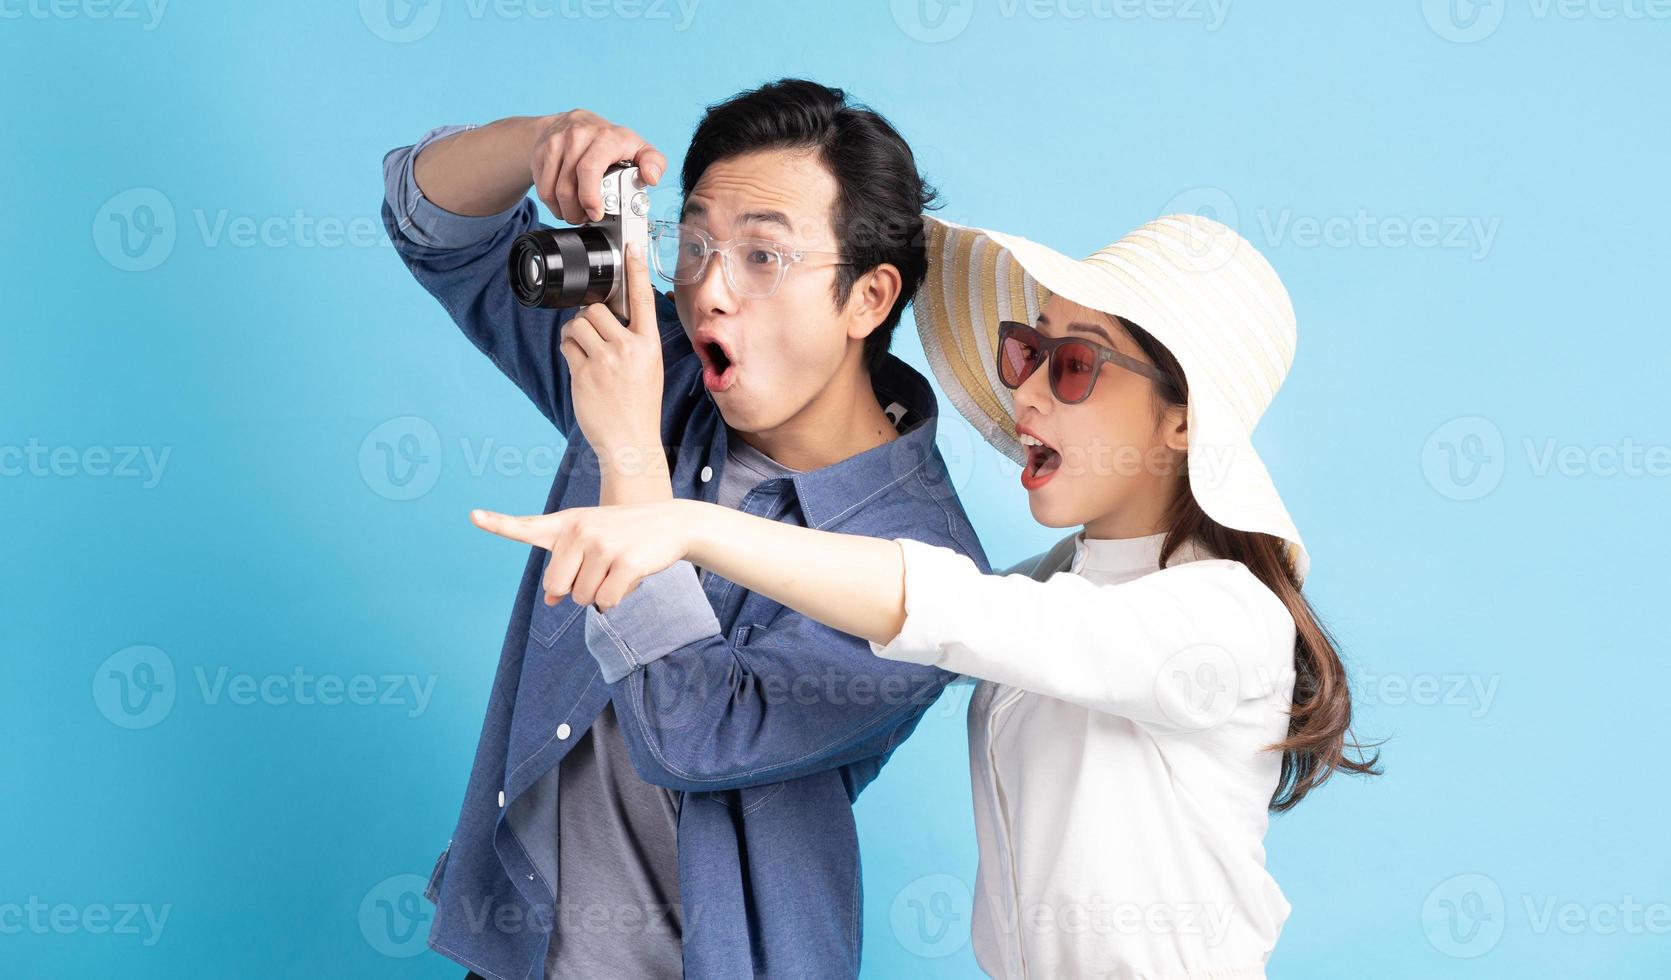 jeune couple asiatique voyageant joyeusement ensemble photo